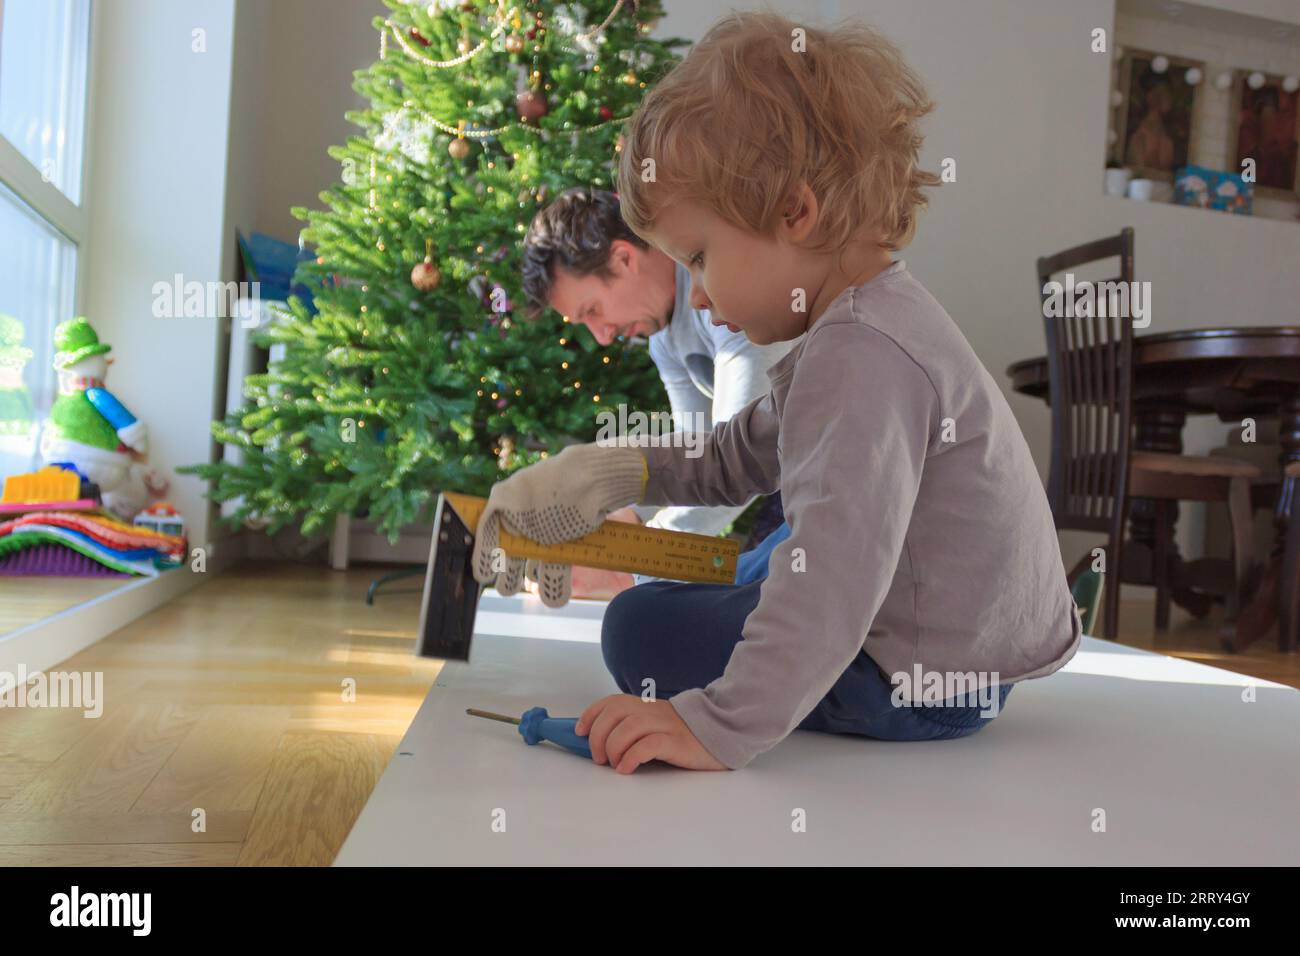 Hausrenovierung zum Selbermachen: Vater und Kind reparieren gemeinsam Möbel am Weihnachtsbaum. Stockfoto